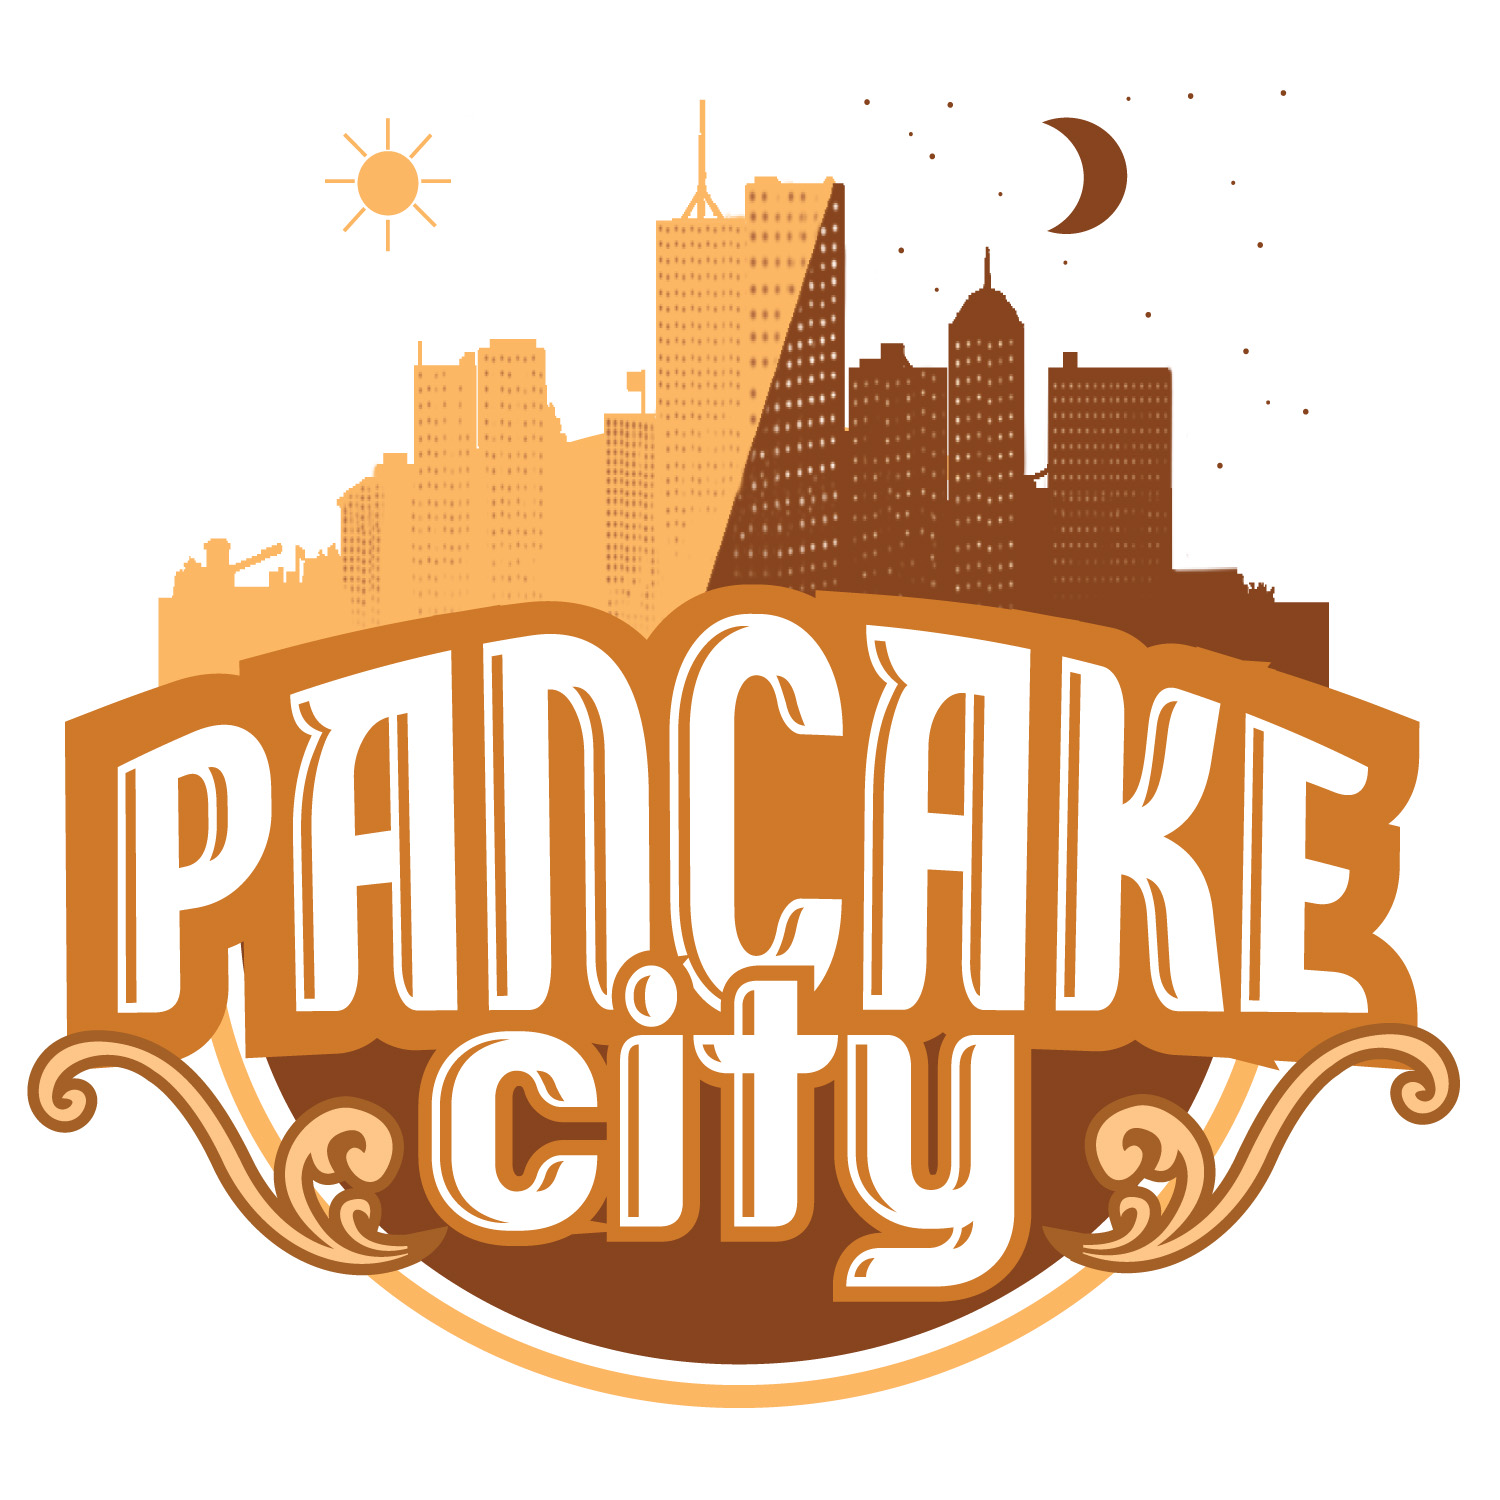 Pancake City